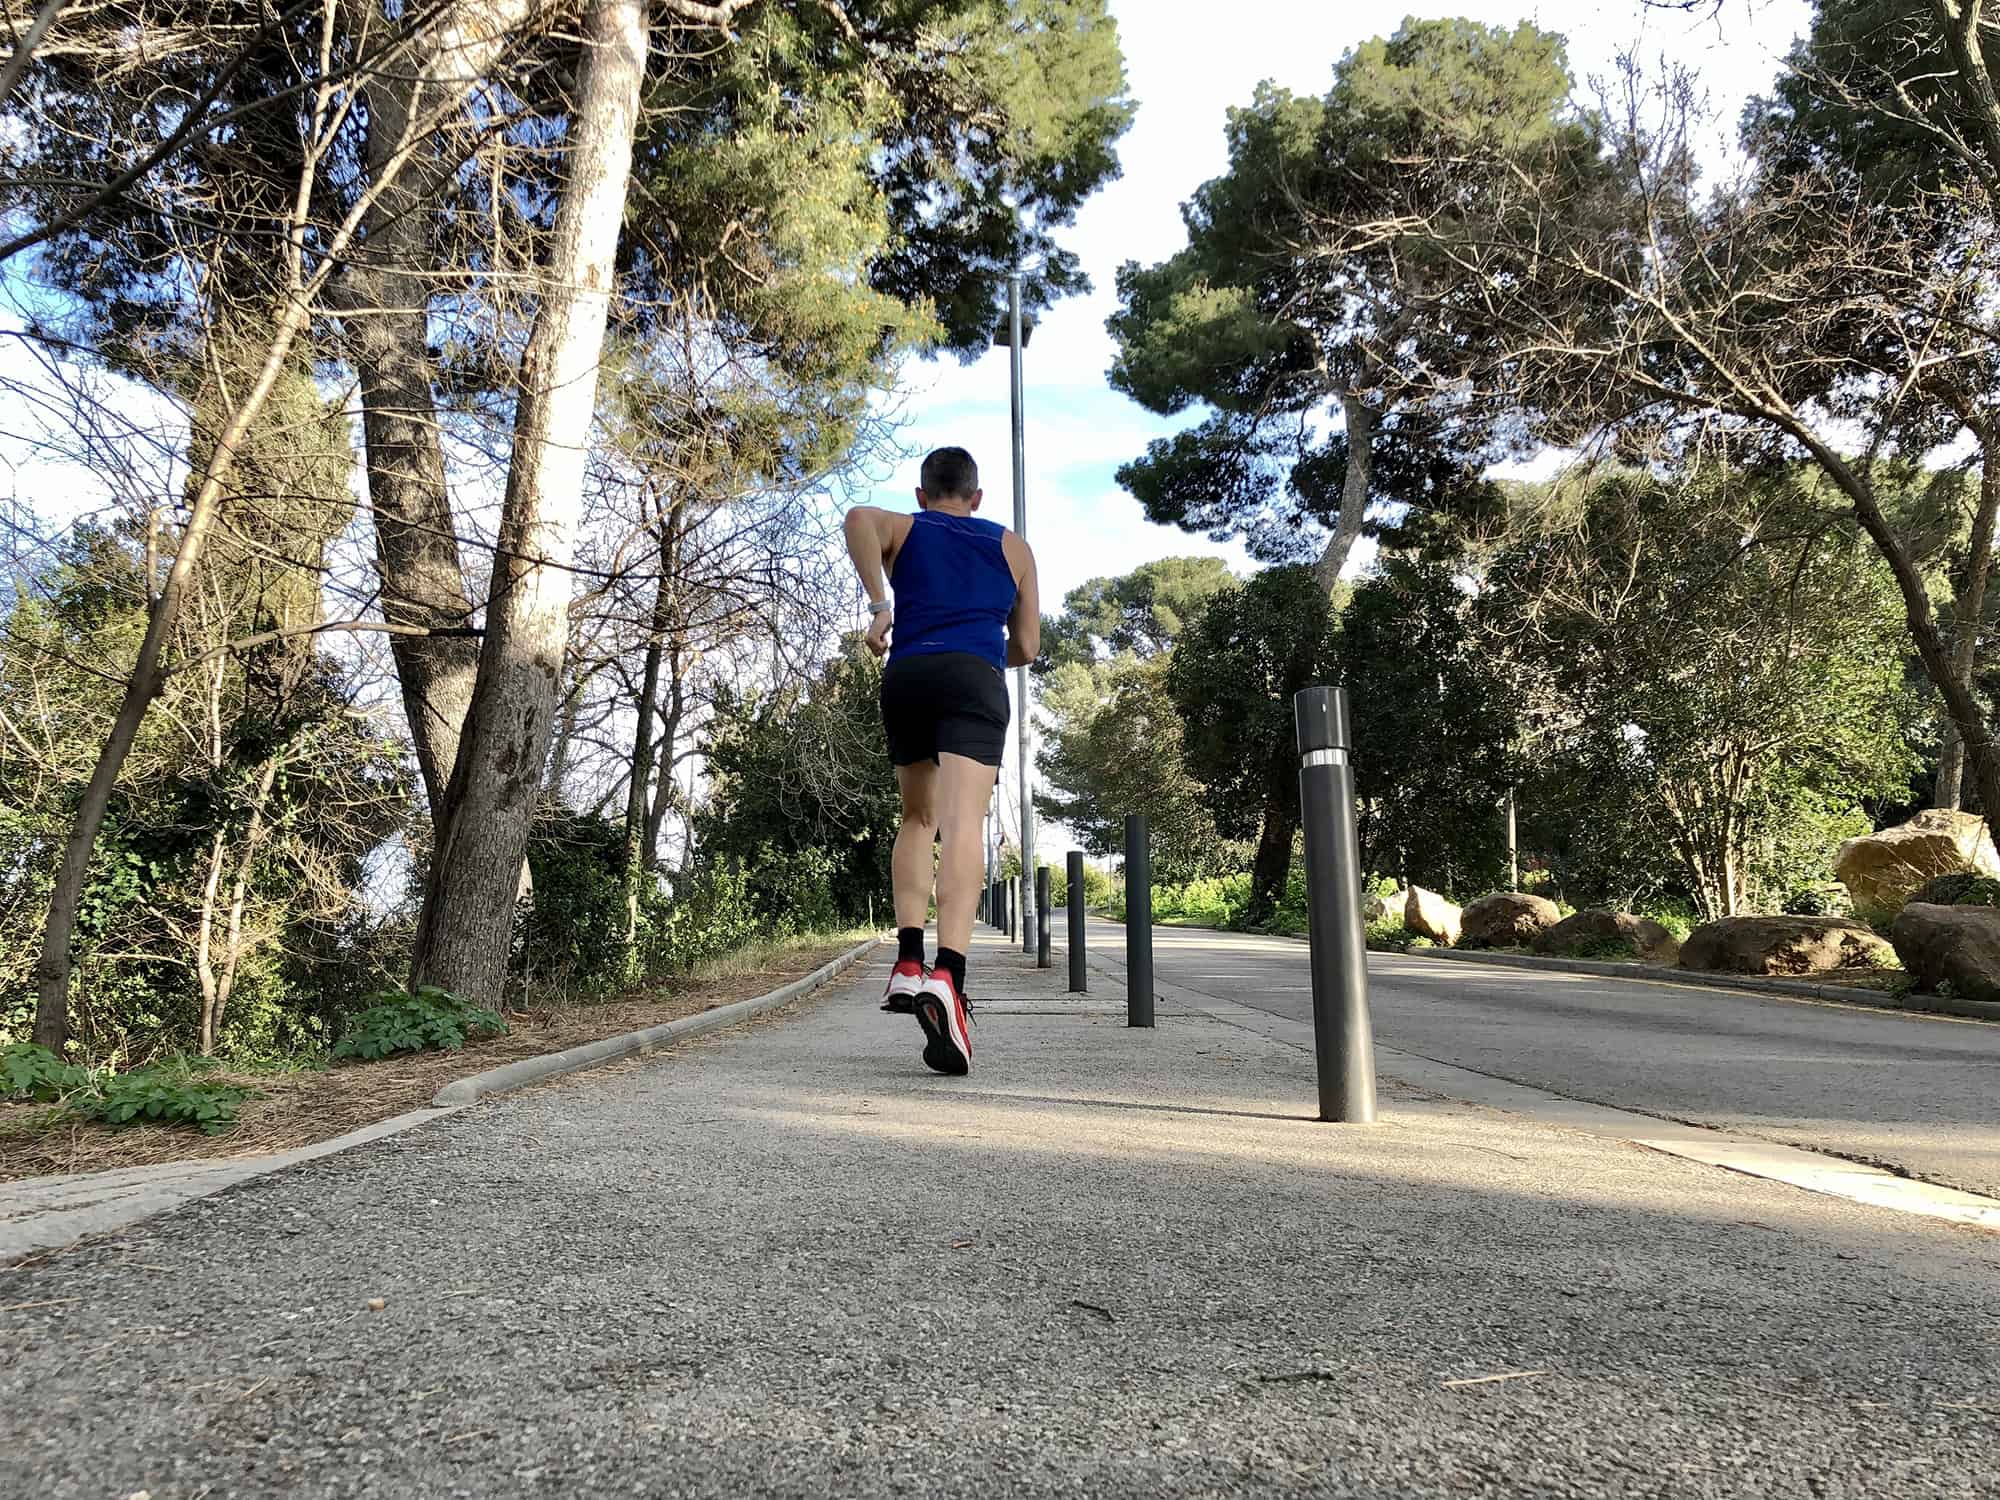 Apple Watch hill running will make you a better runner